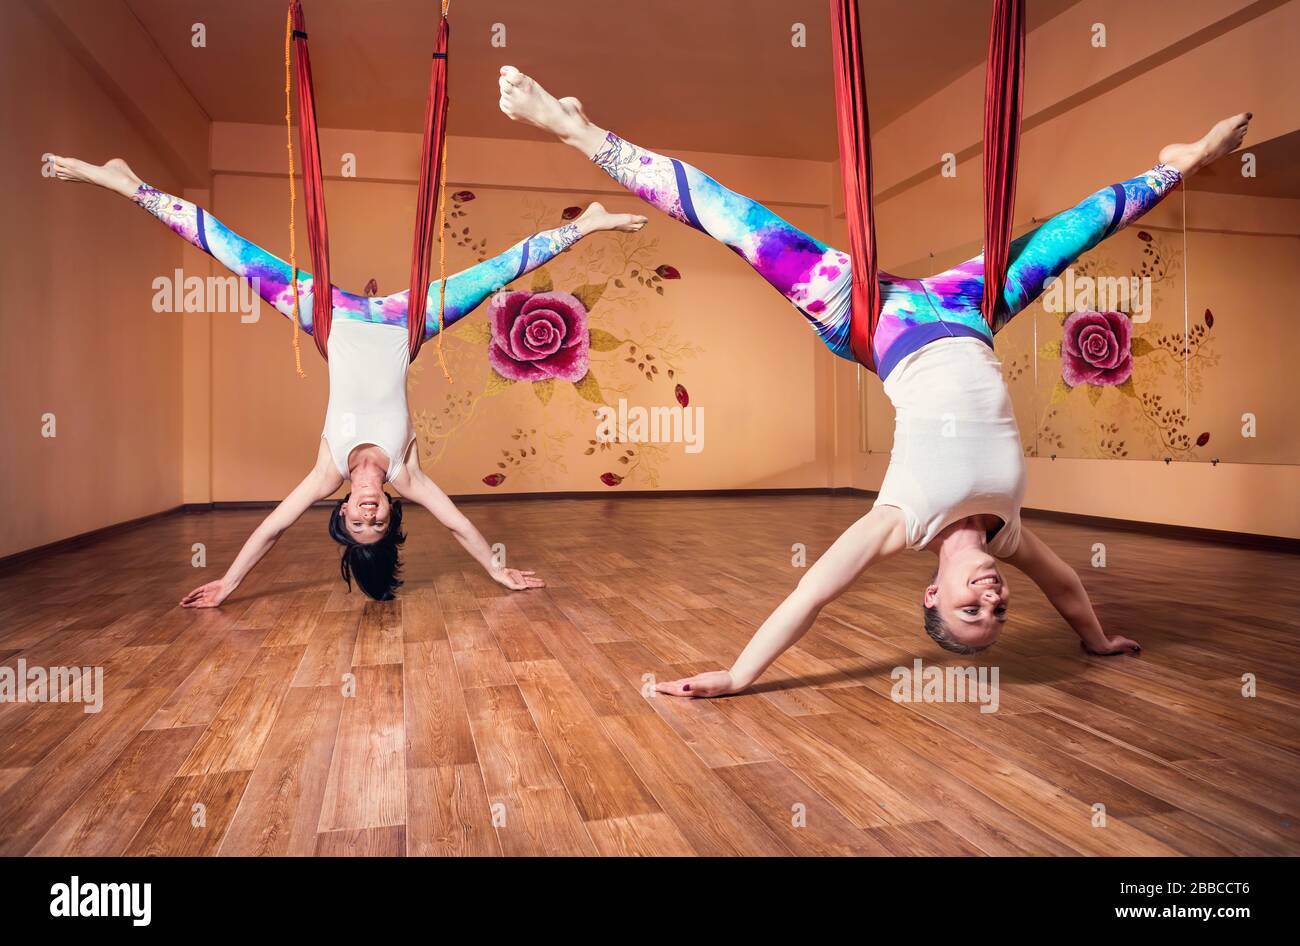 Zwei junge Frau beim Antigravity Yoga invertiert Position am Wellness-Studio mit Rose an der Wand Stockfoto